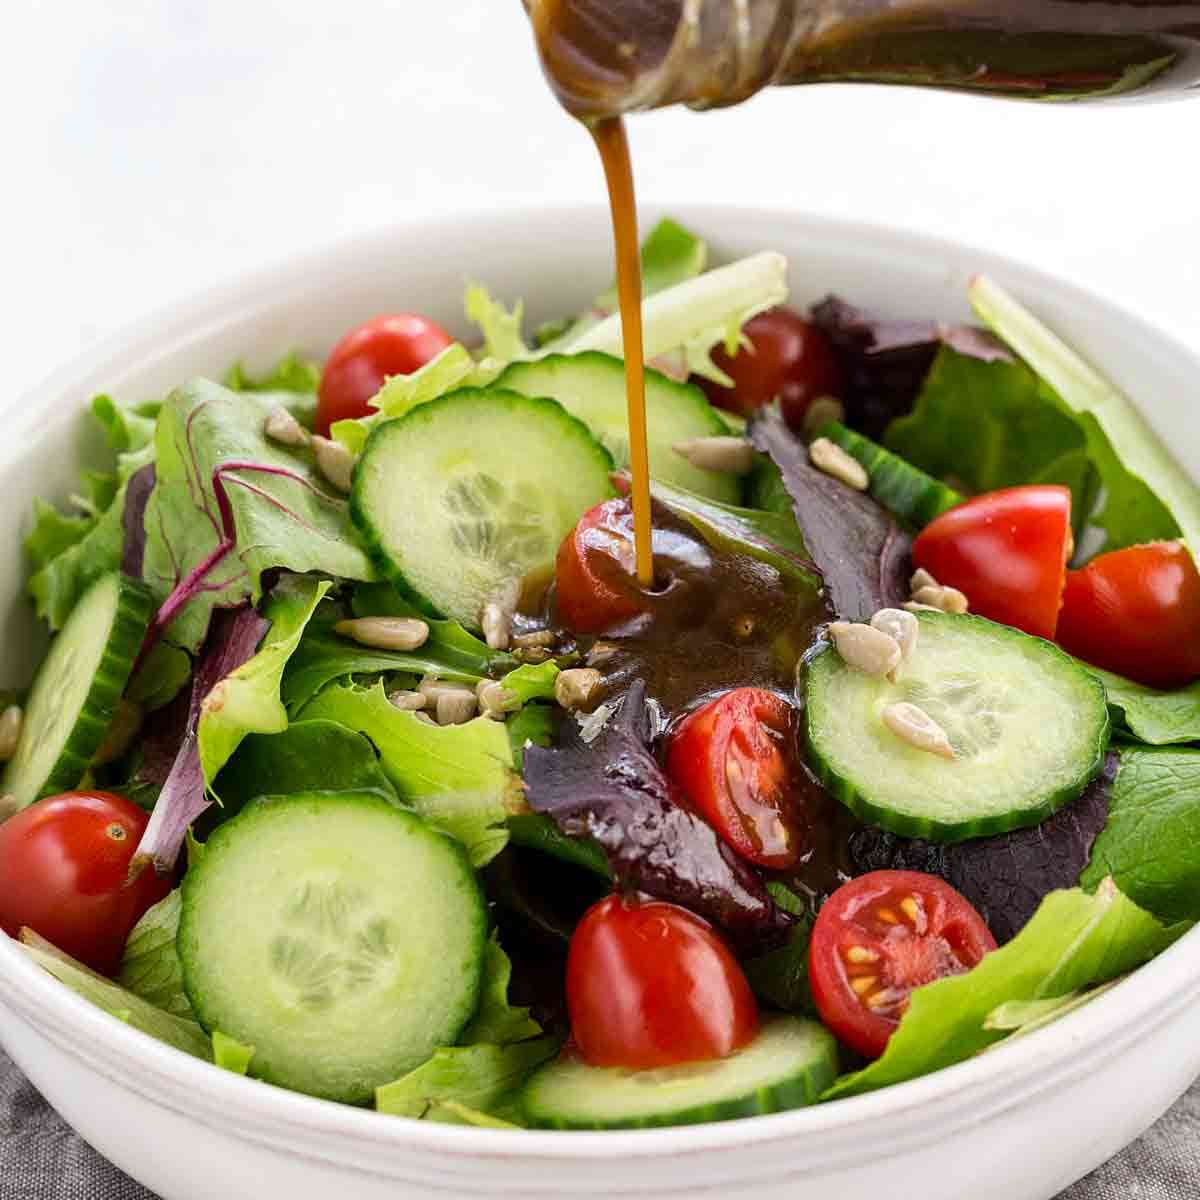 Phương pháp trộn salad đơn giản, đầy đủ chất dinh dưỡng